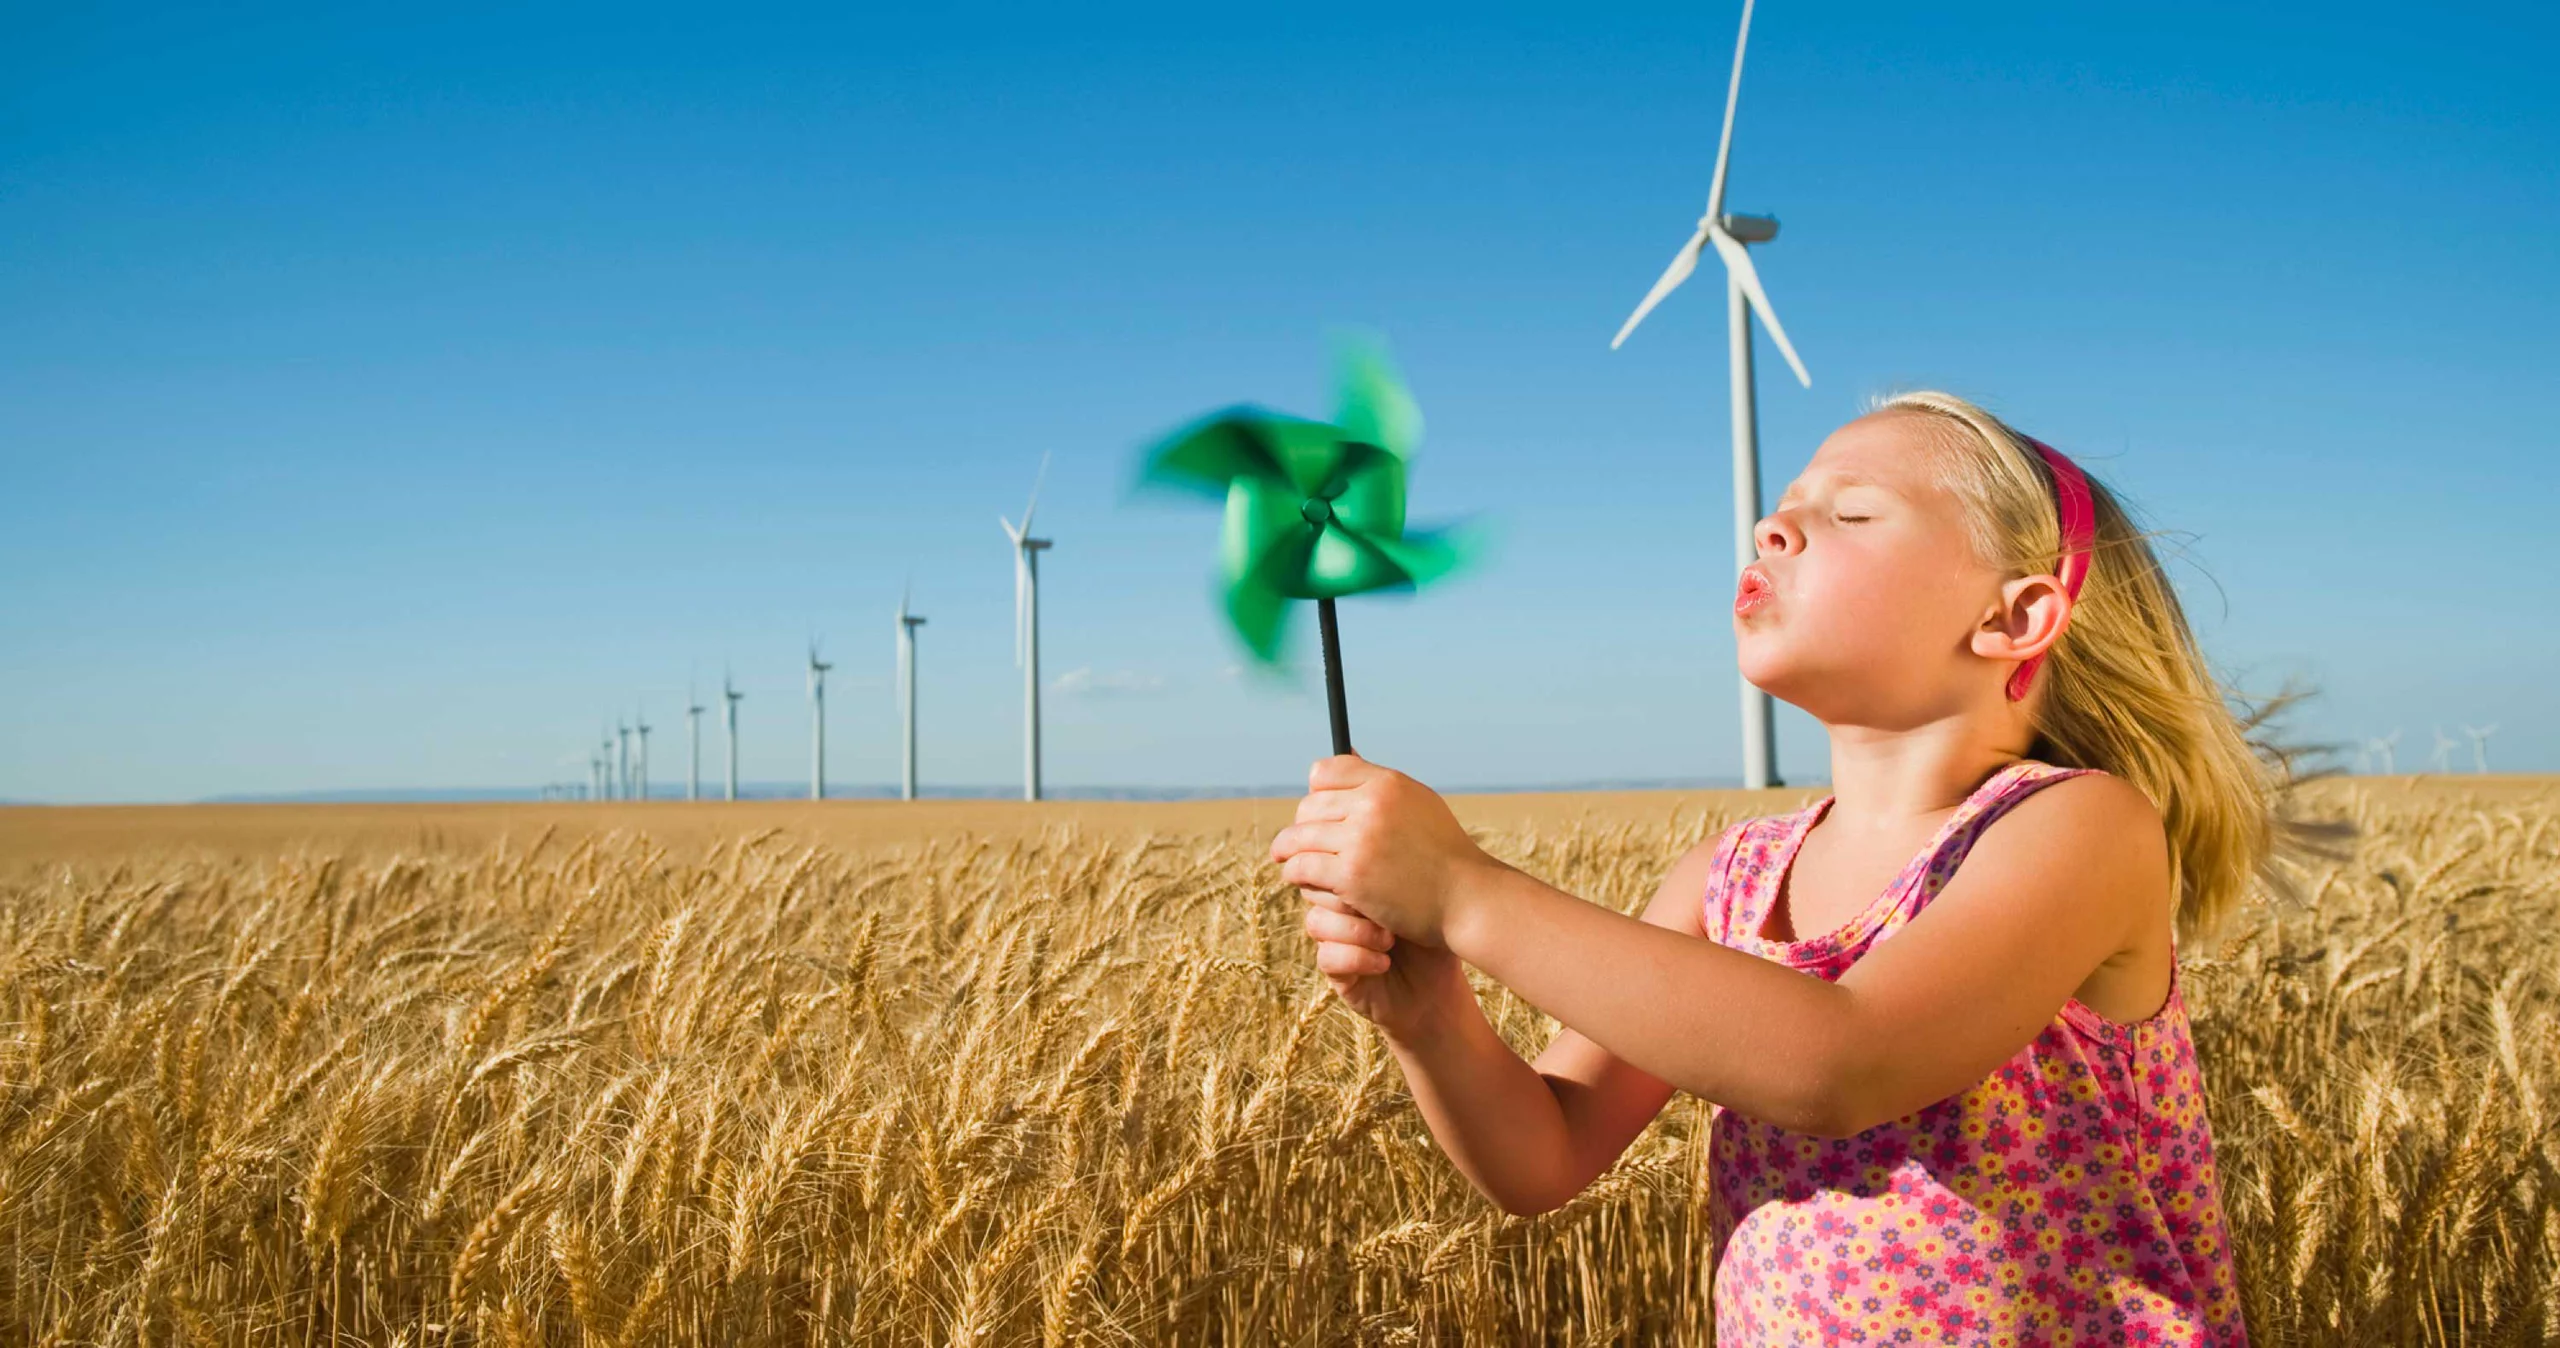 Photo d'une petite fille dans un champ de blé soufflant sur un jouet moulin à vent, avec des éoliennes en fond